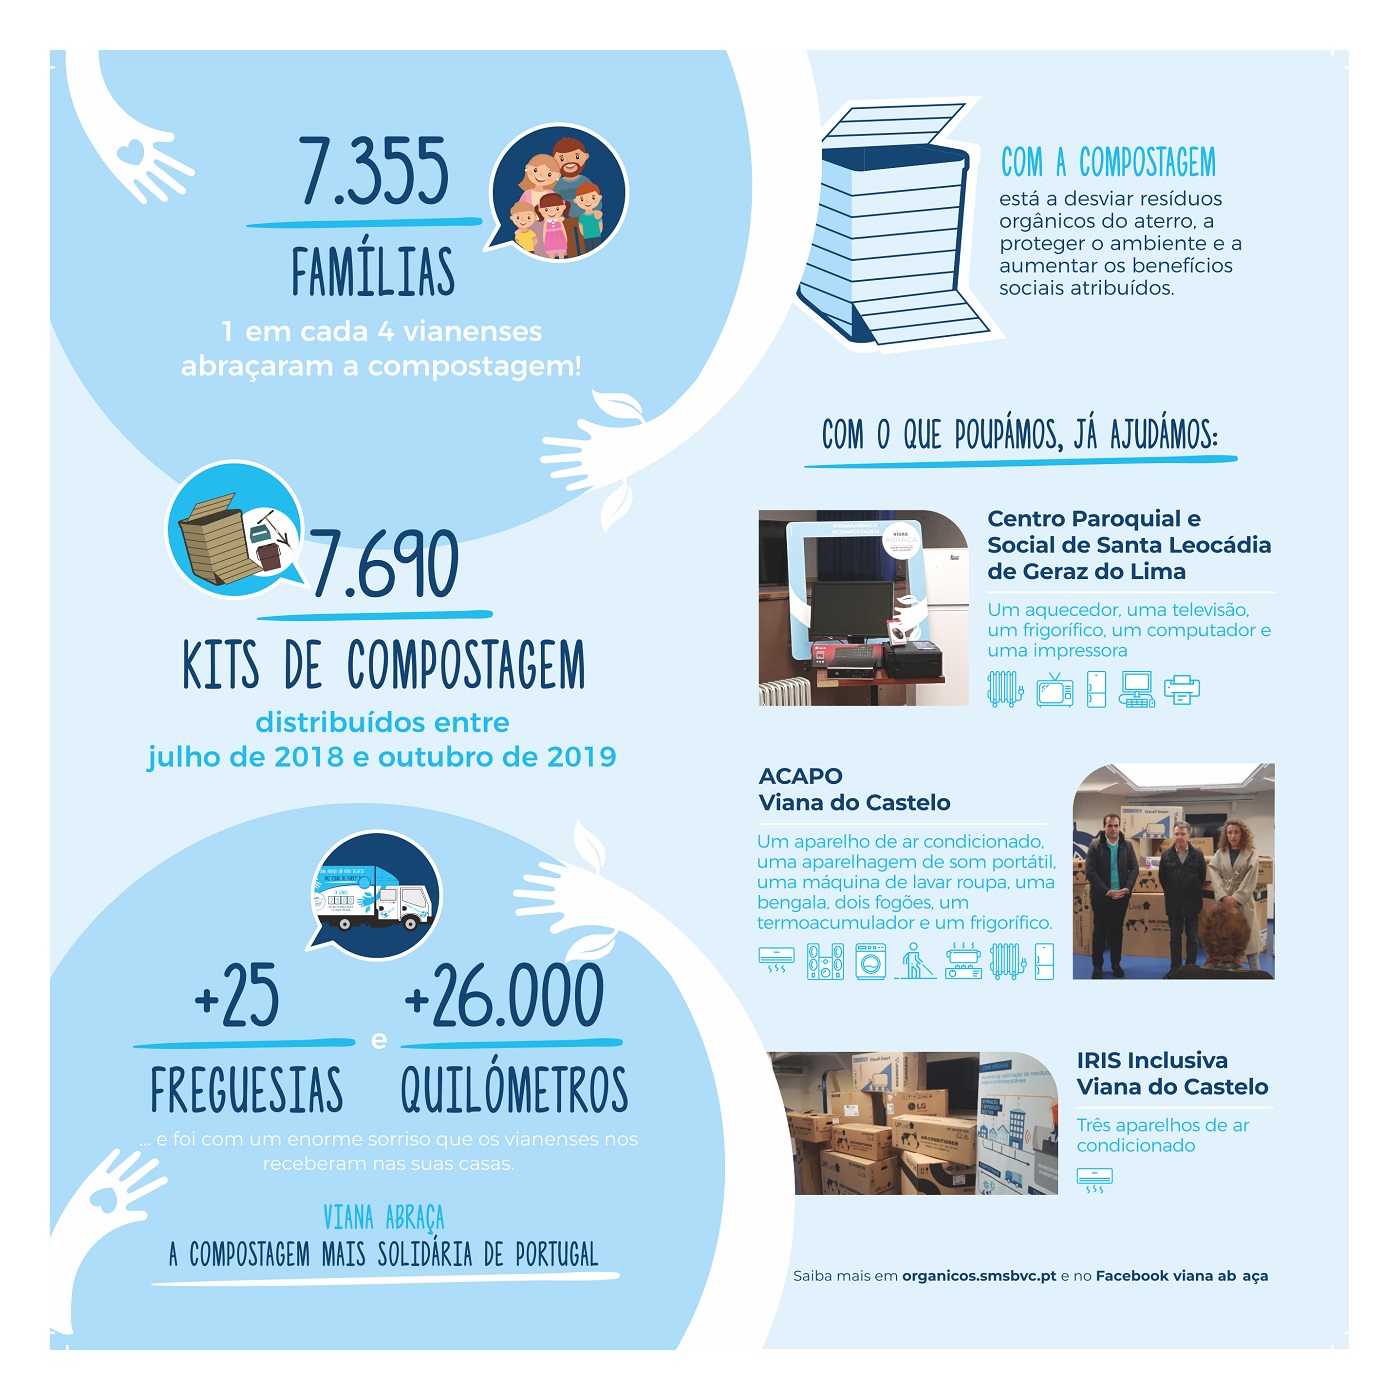 Mais de 7355 famílias a fazer compostagem doméstica - 2